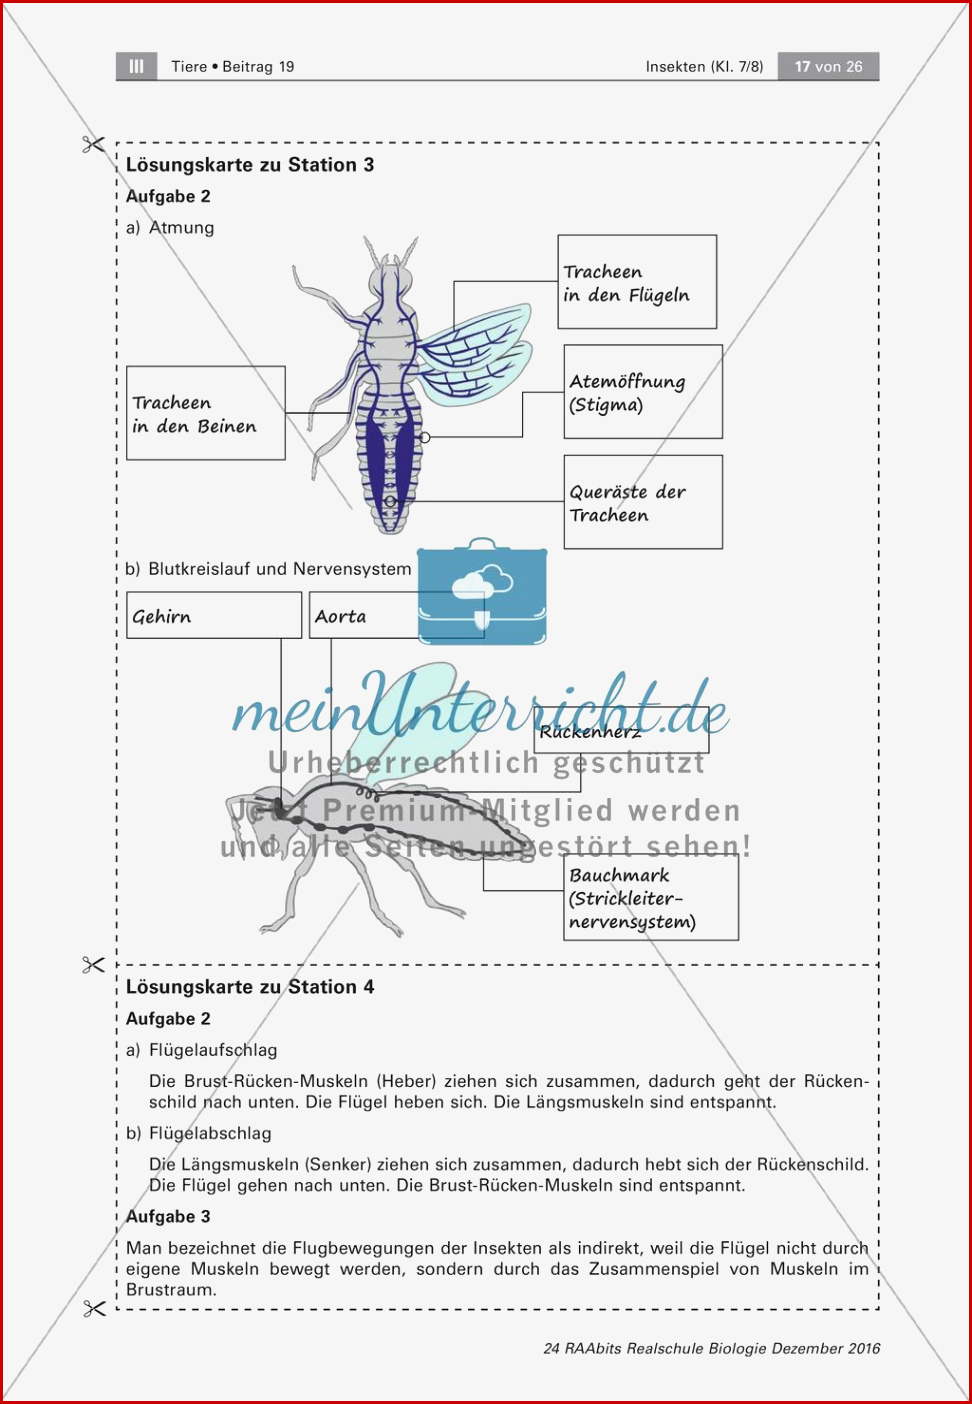 Insekten Körperbau Sinnesorgane Flugtechnik atmung